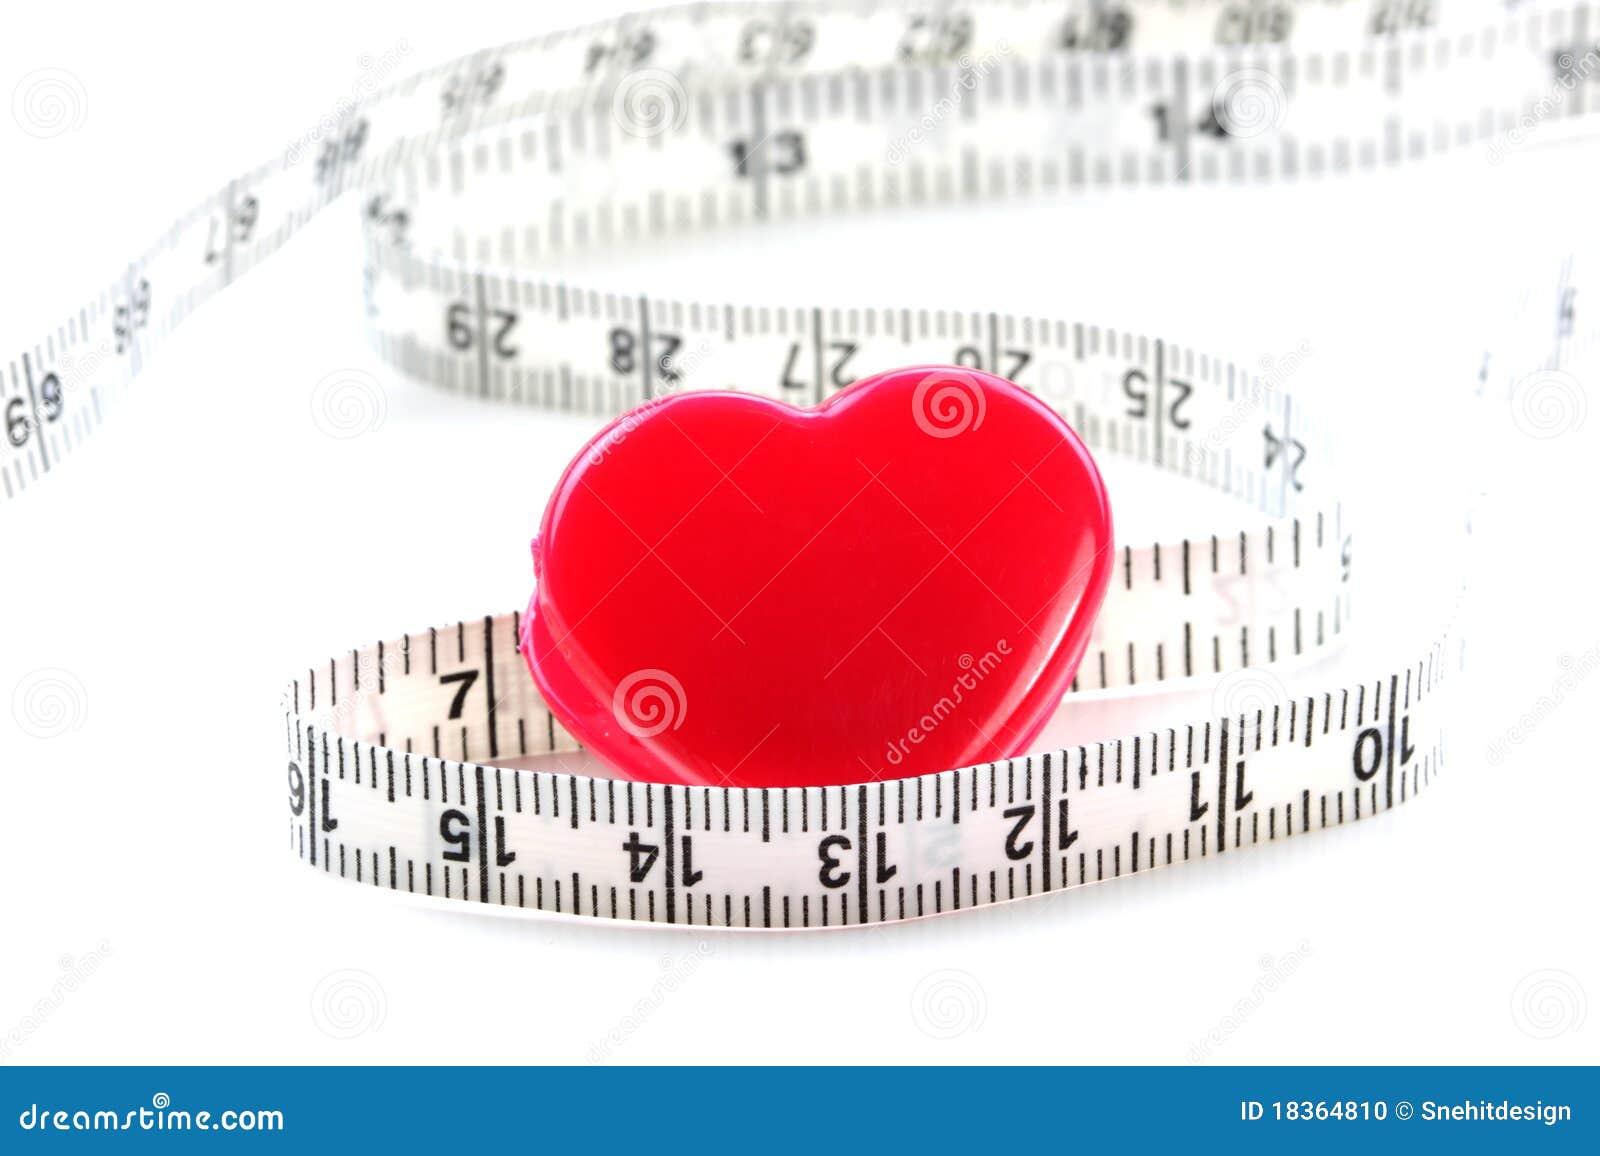 Измерение любви 5. Измерение любви. Измерить любовь. Шкала измерения любви. Любовь можно измерить.